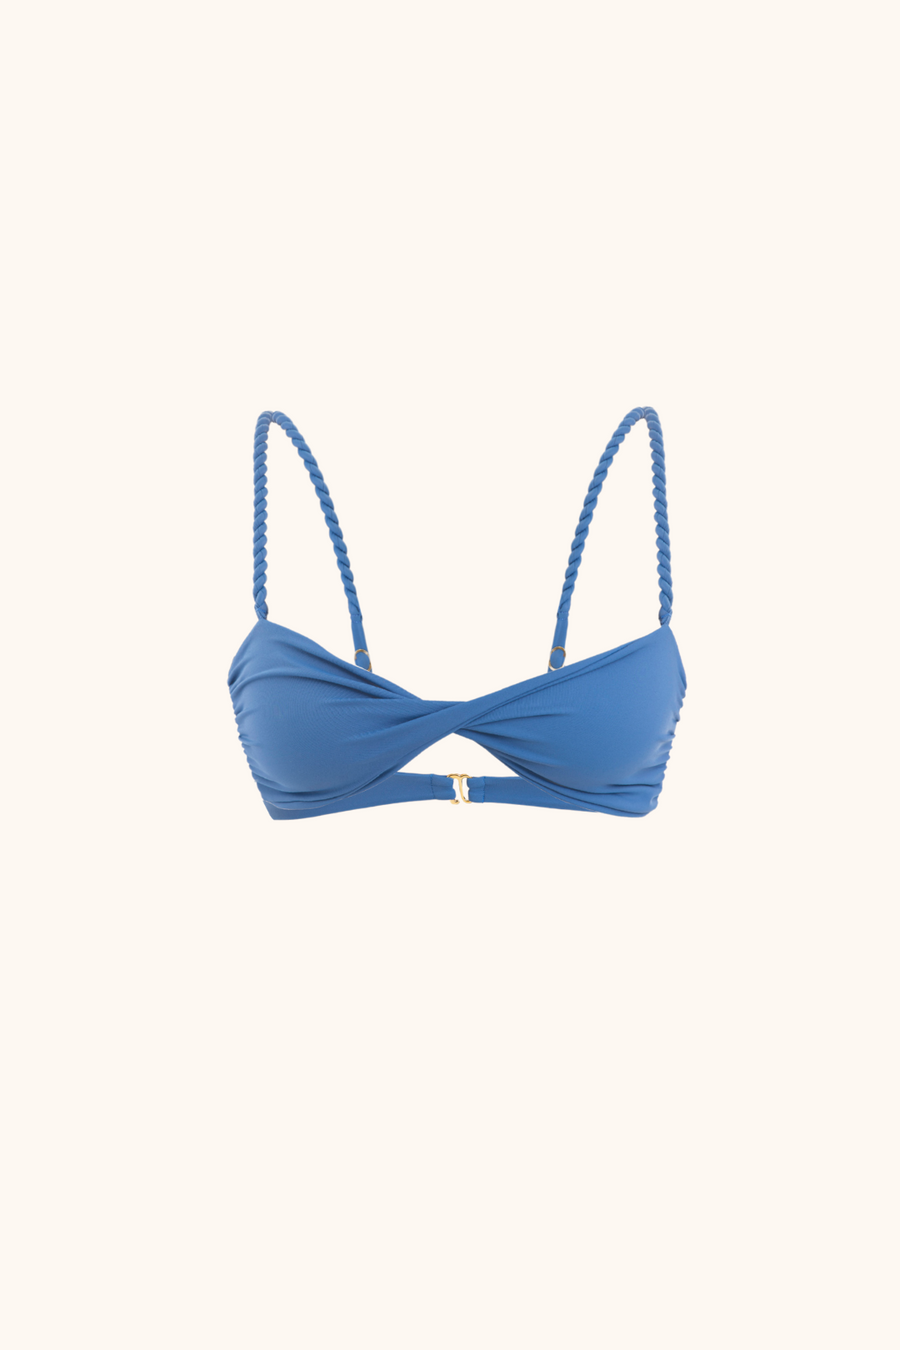 'Steel Blue' Bikini Top